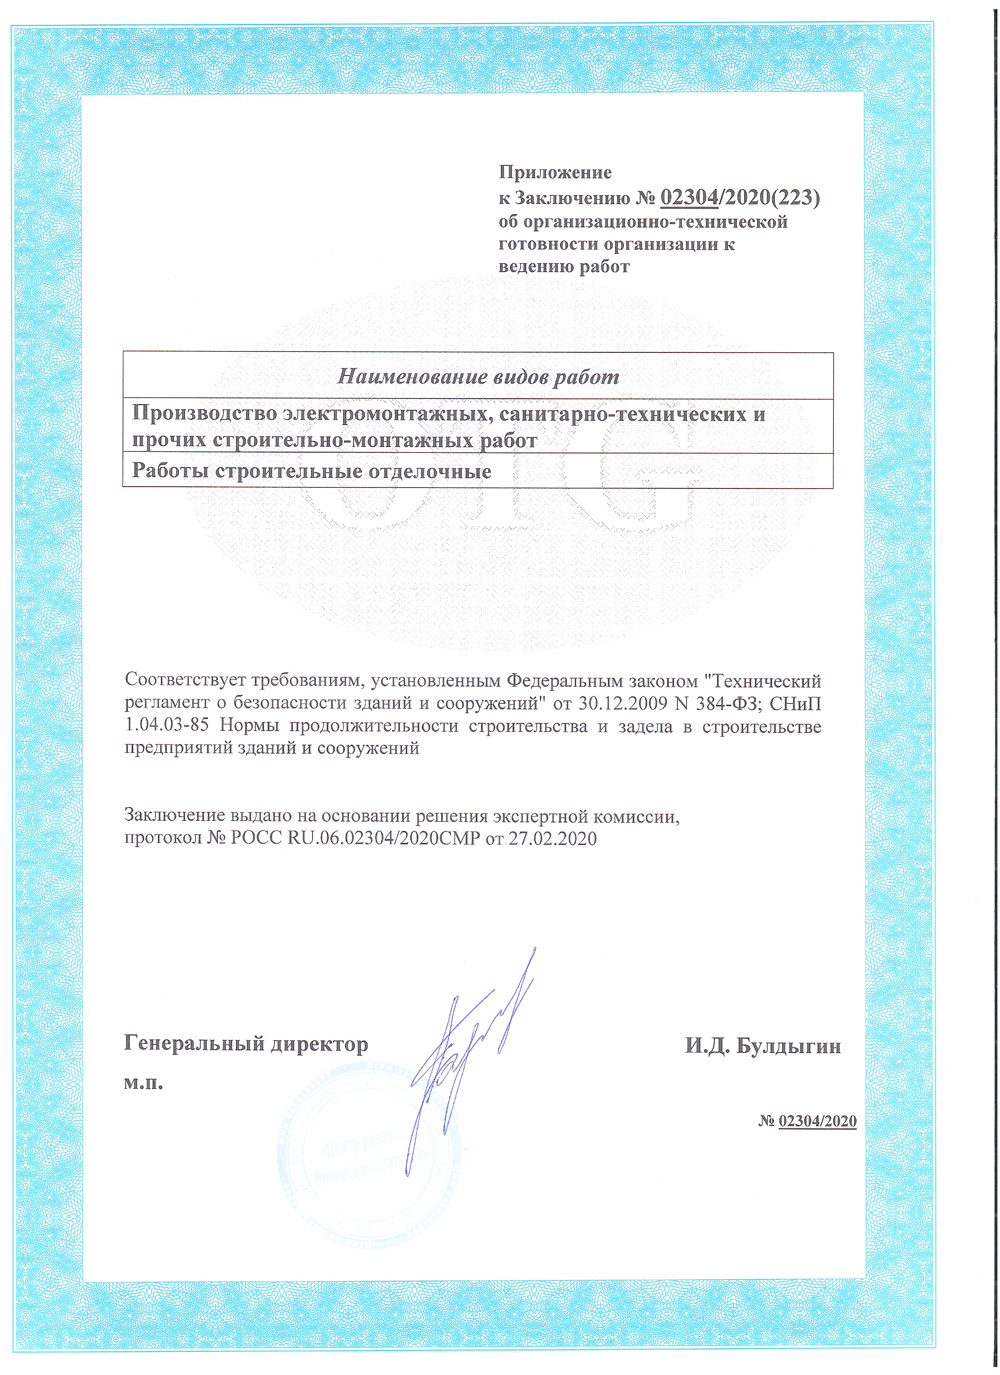 Приложение к сертификату оргтехготовности компании Инстройпроект